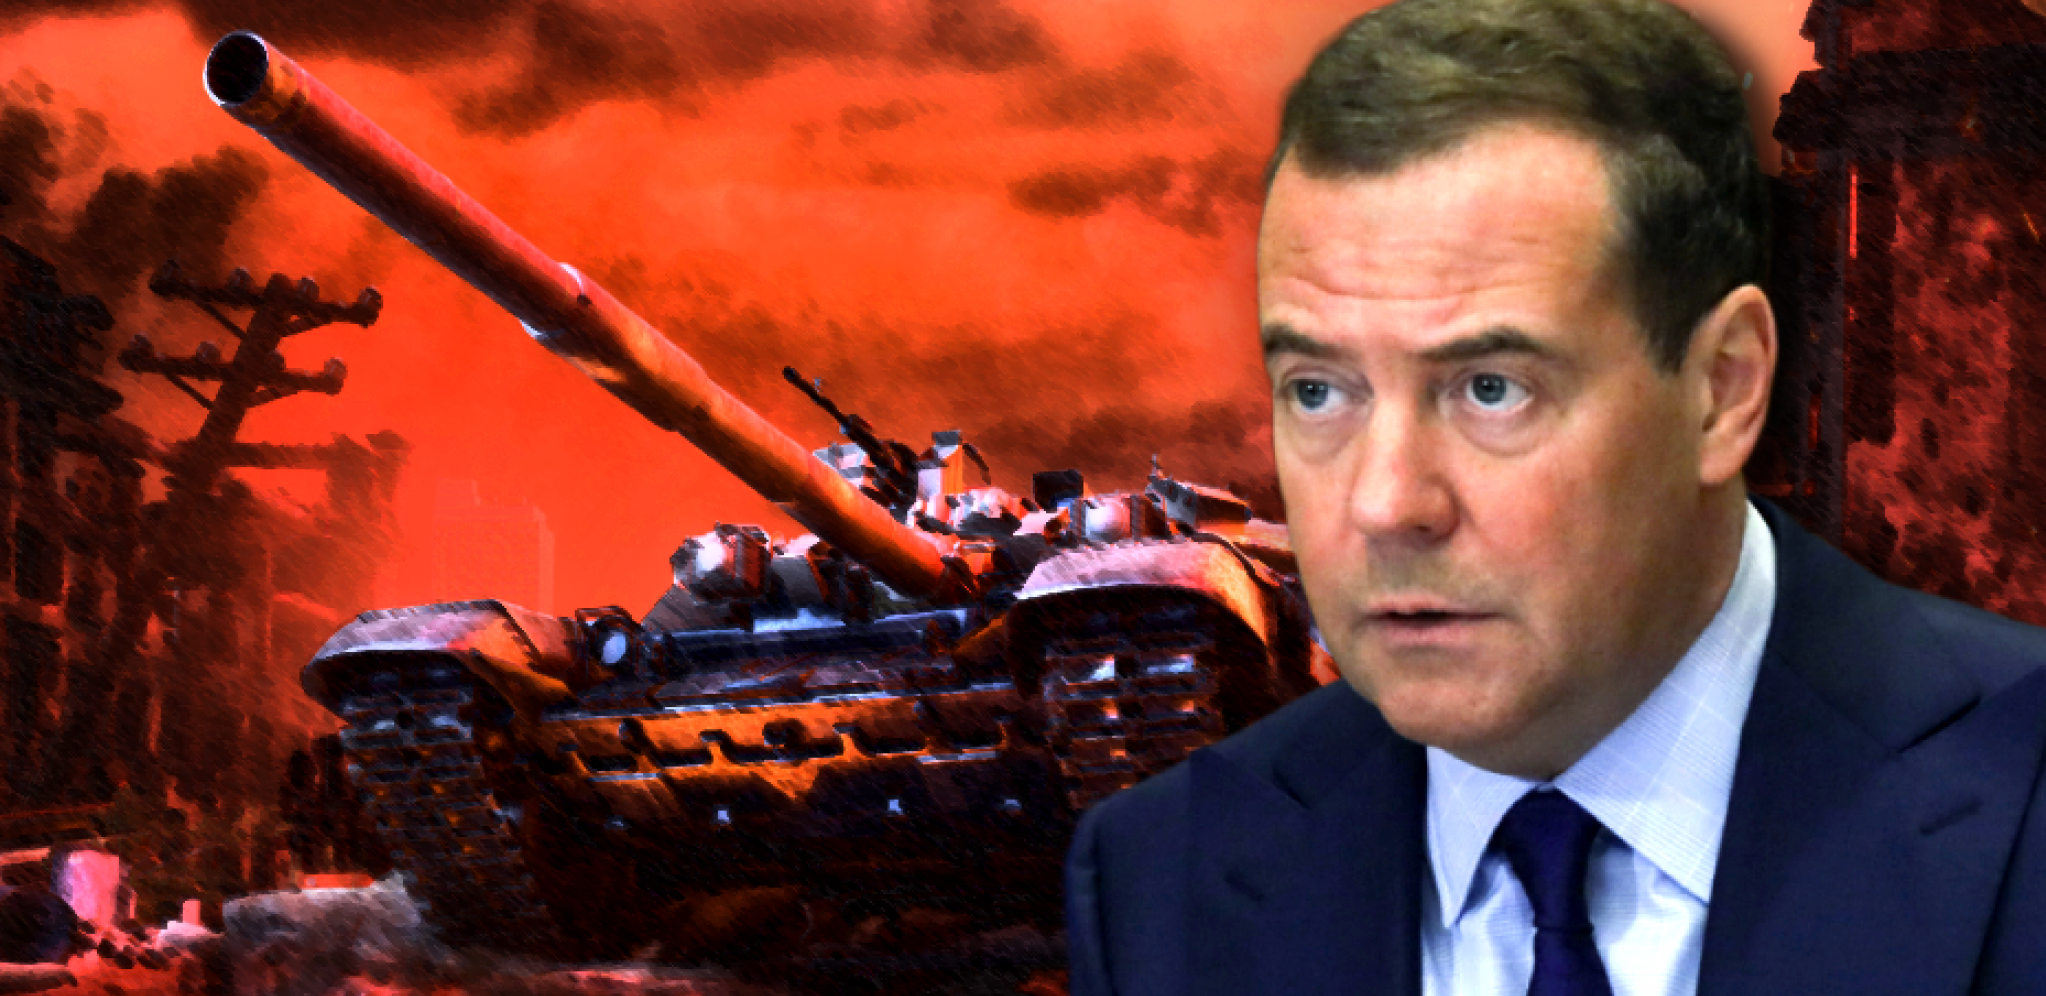 POBEDA JE NAŠA, BOG JE SA NAMA! Moćan govor Medvedeva pred ČEČENIMA